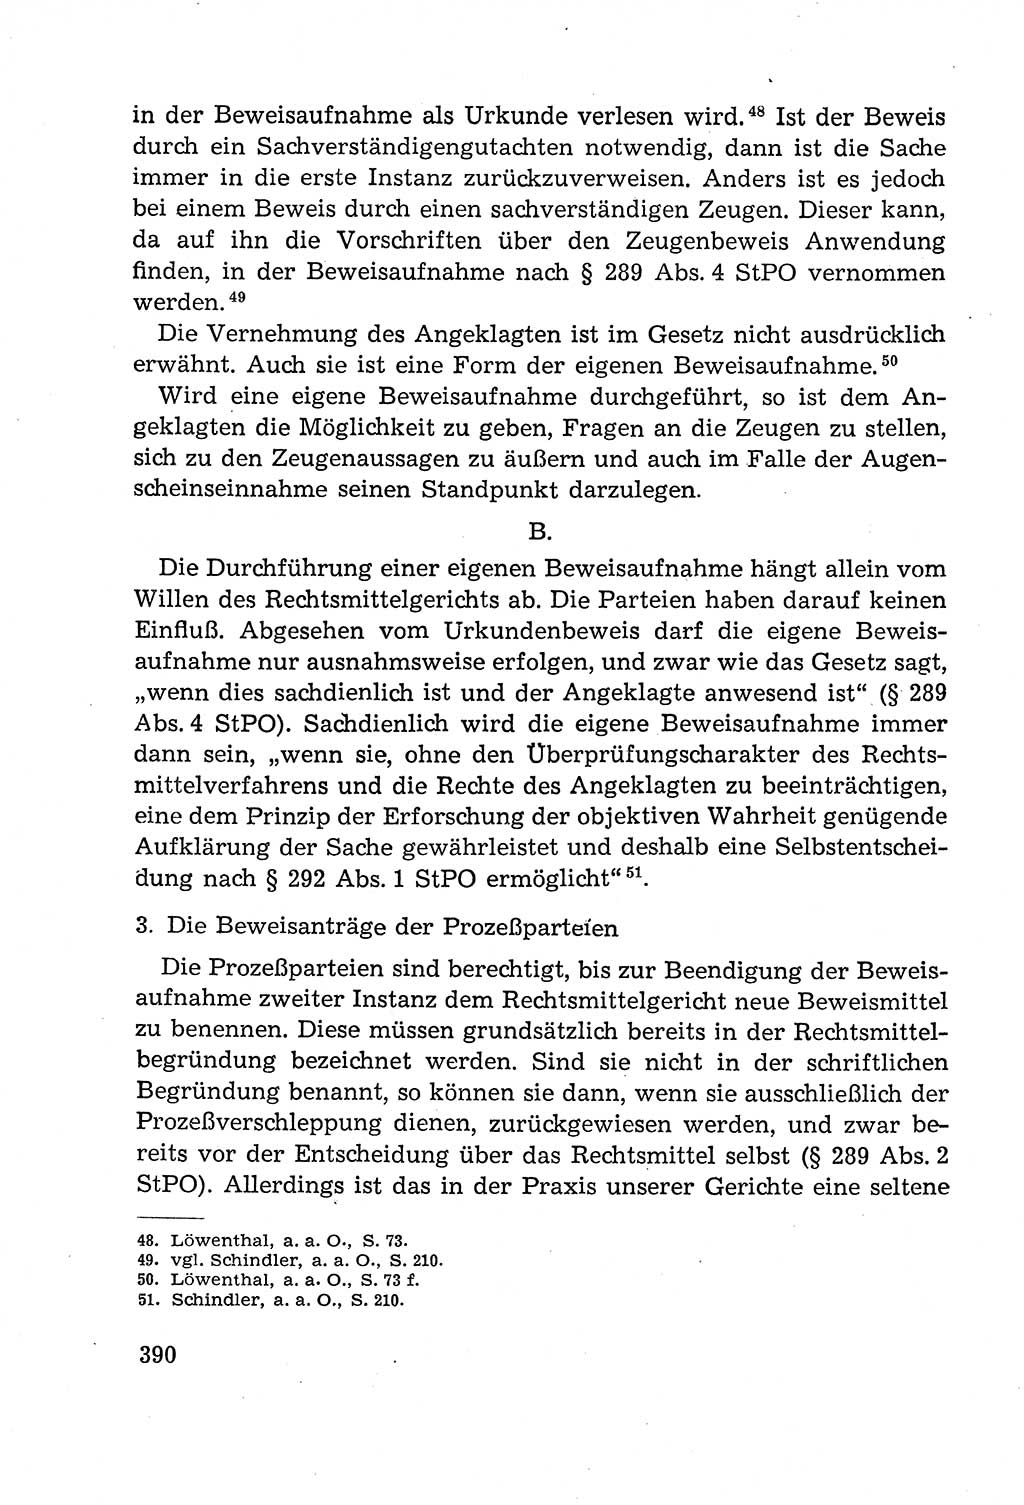 Leitfaden des Strafprozeßrechts der Deutschen Demokratischen Republik (DDR) 1959, Seite 390 (LF StPR DDR 1959, S. 390)